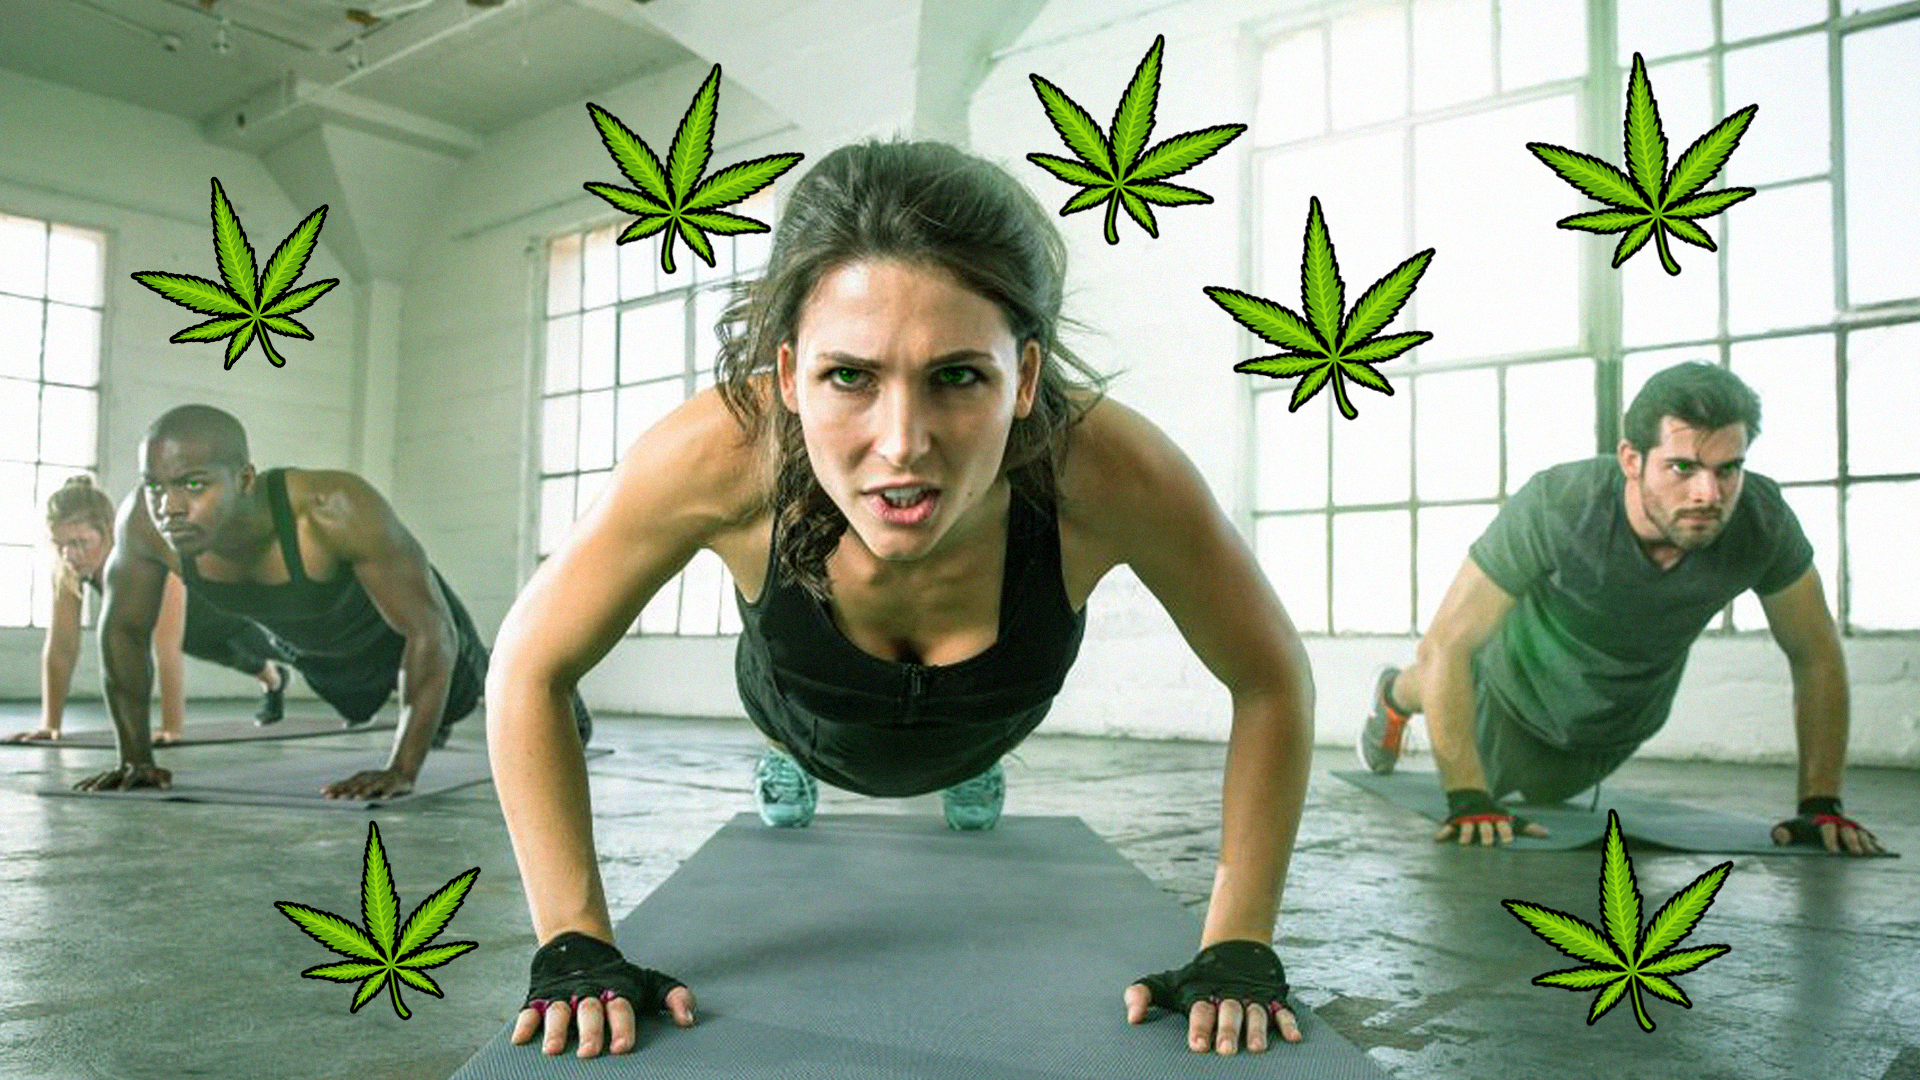 marijuana ajuta u pierde in greutate wallpaper de inspirație pentru pierderea în greutate